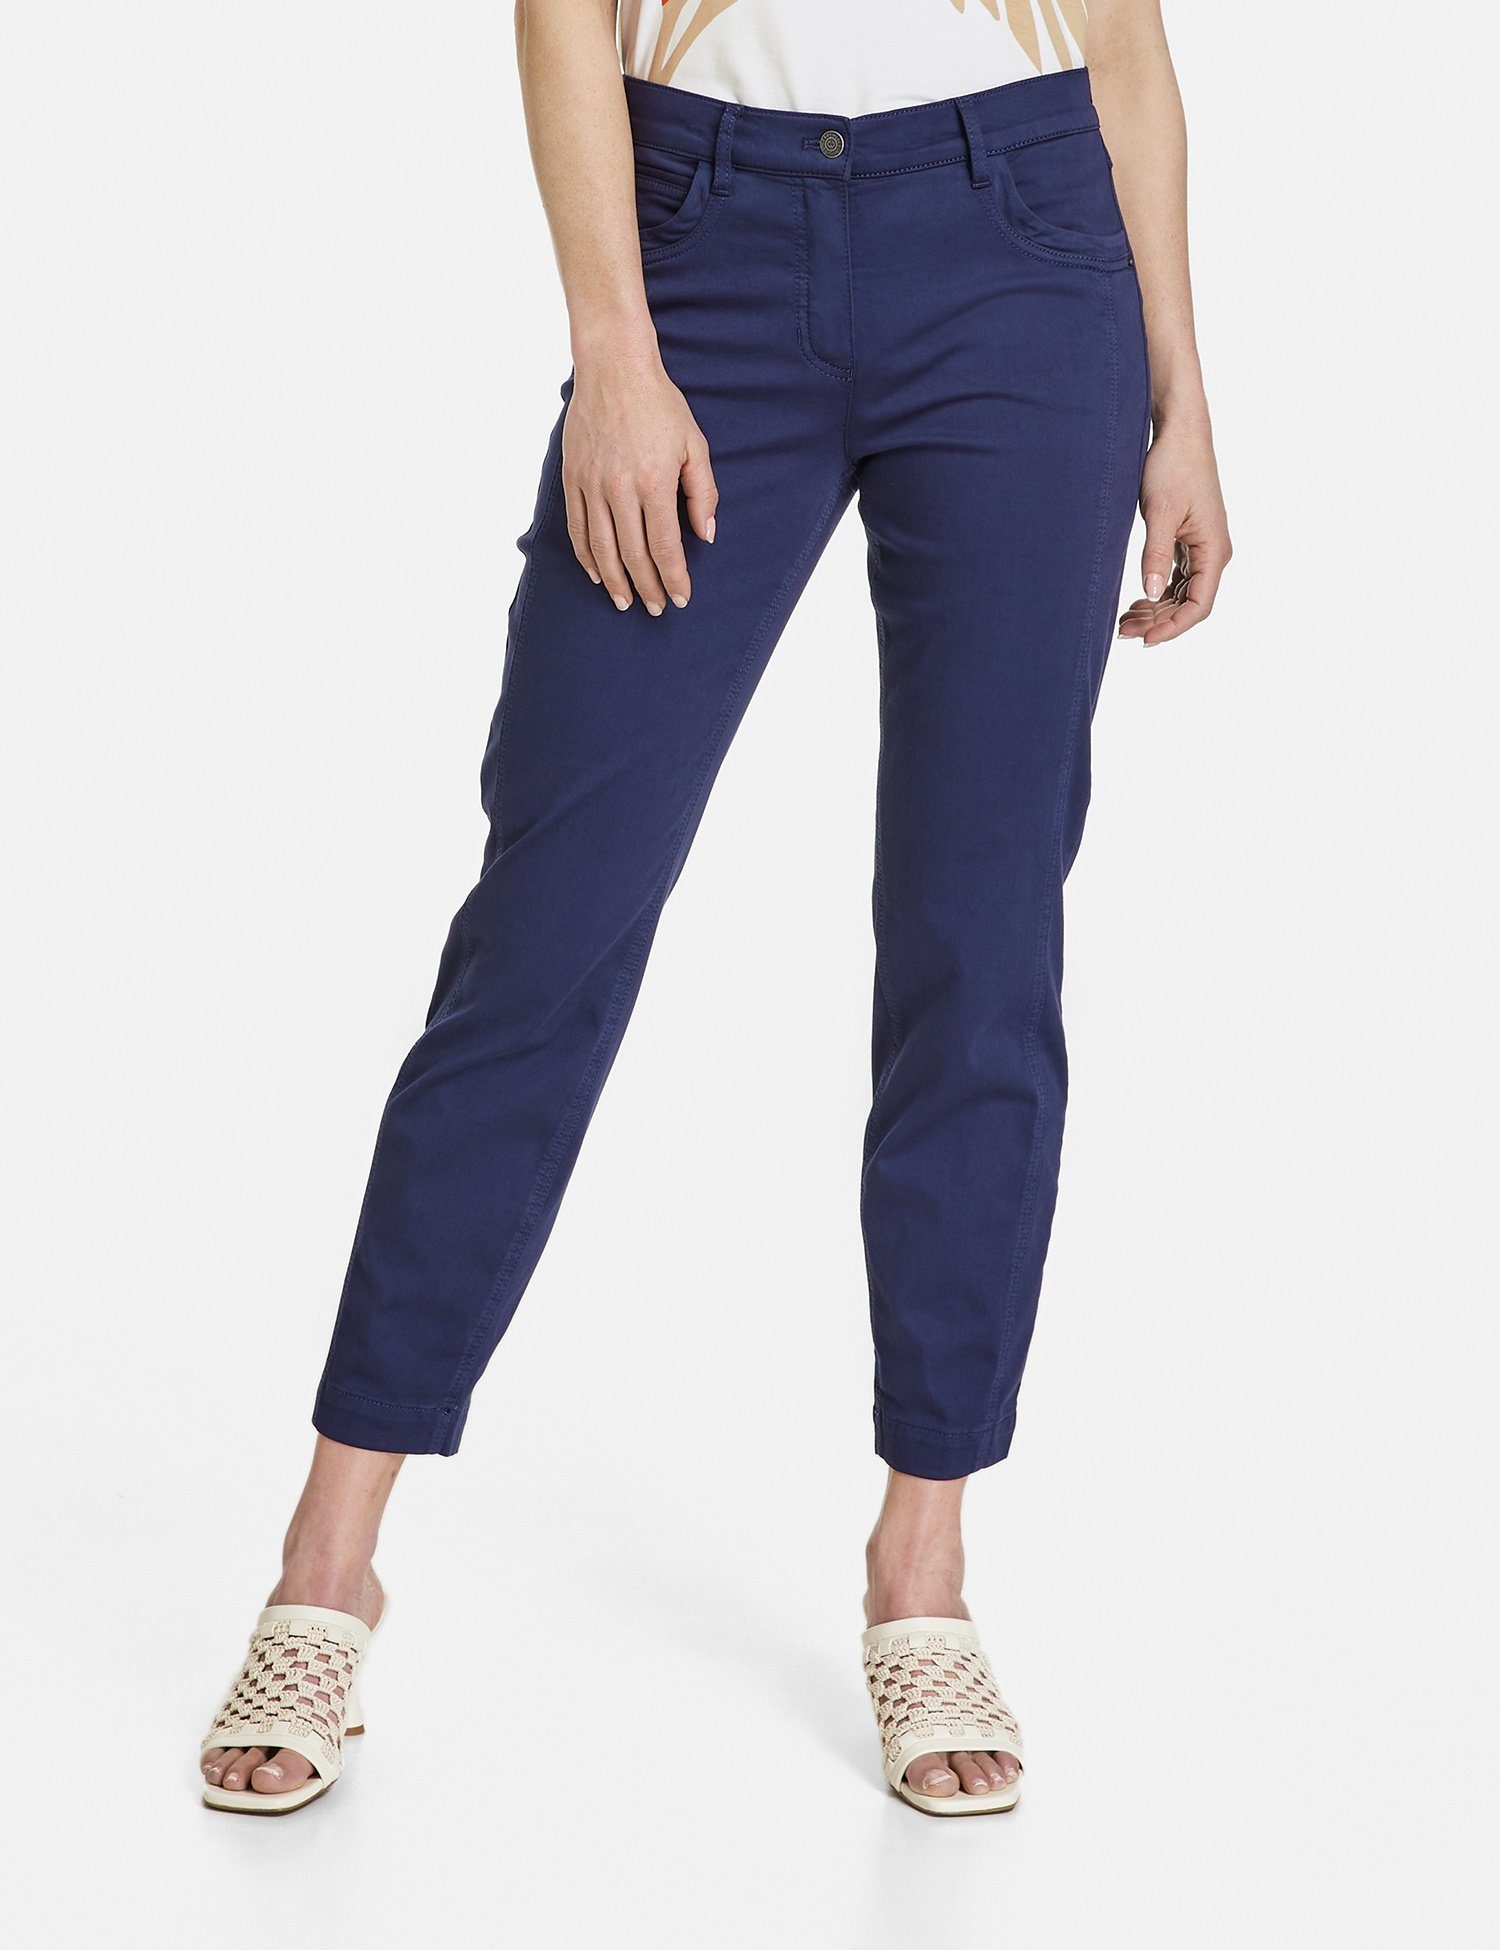 GERRY Jeans 7/8-Hose Pocket Blueberry WEBER 5 CROPPED BEST4ME